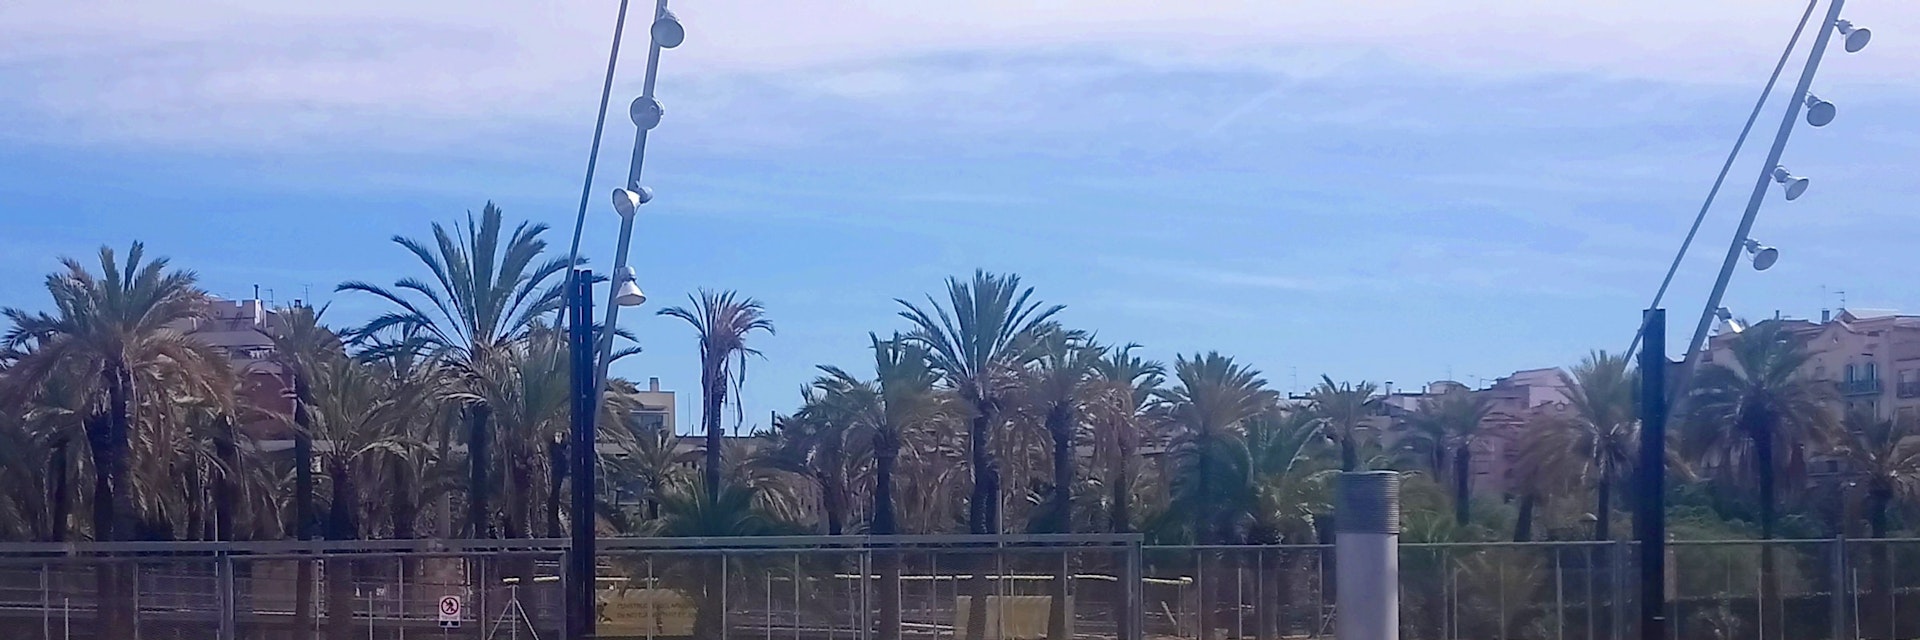 View of Parc de Joan Miró